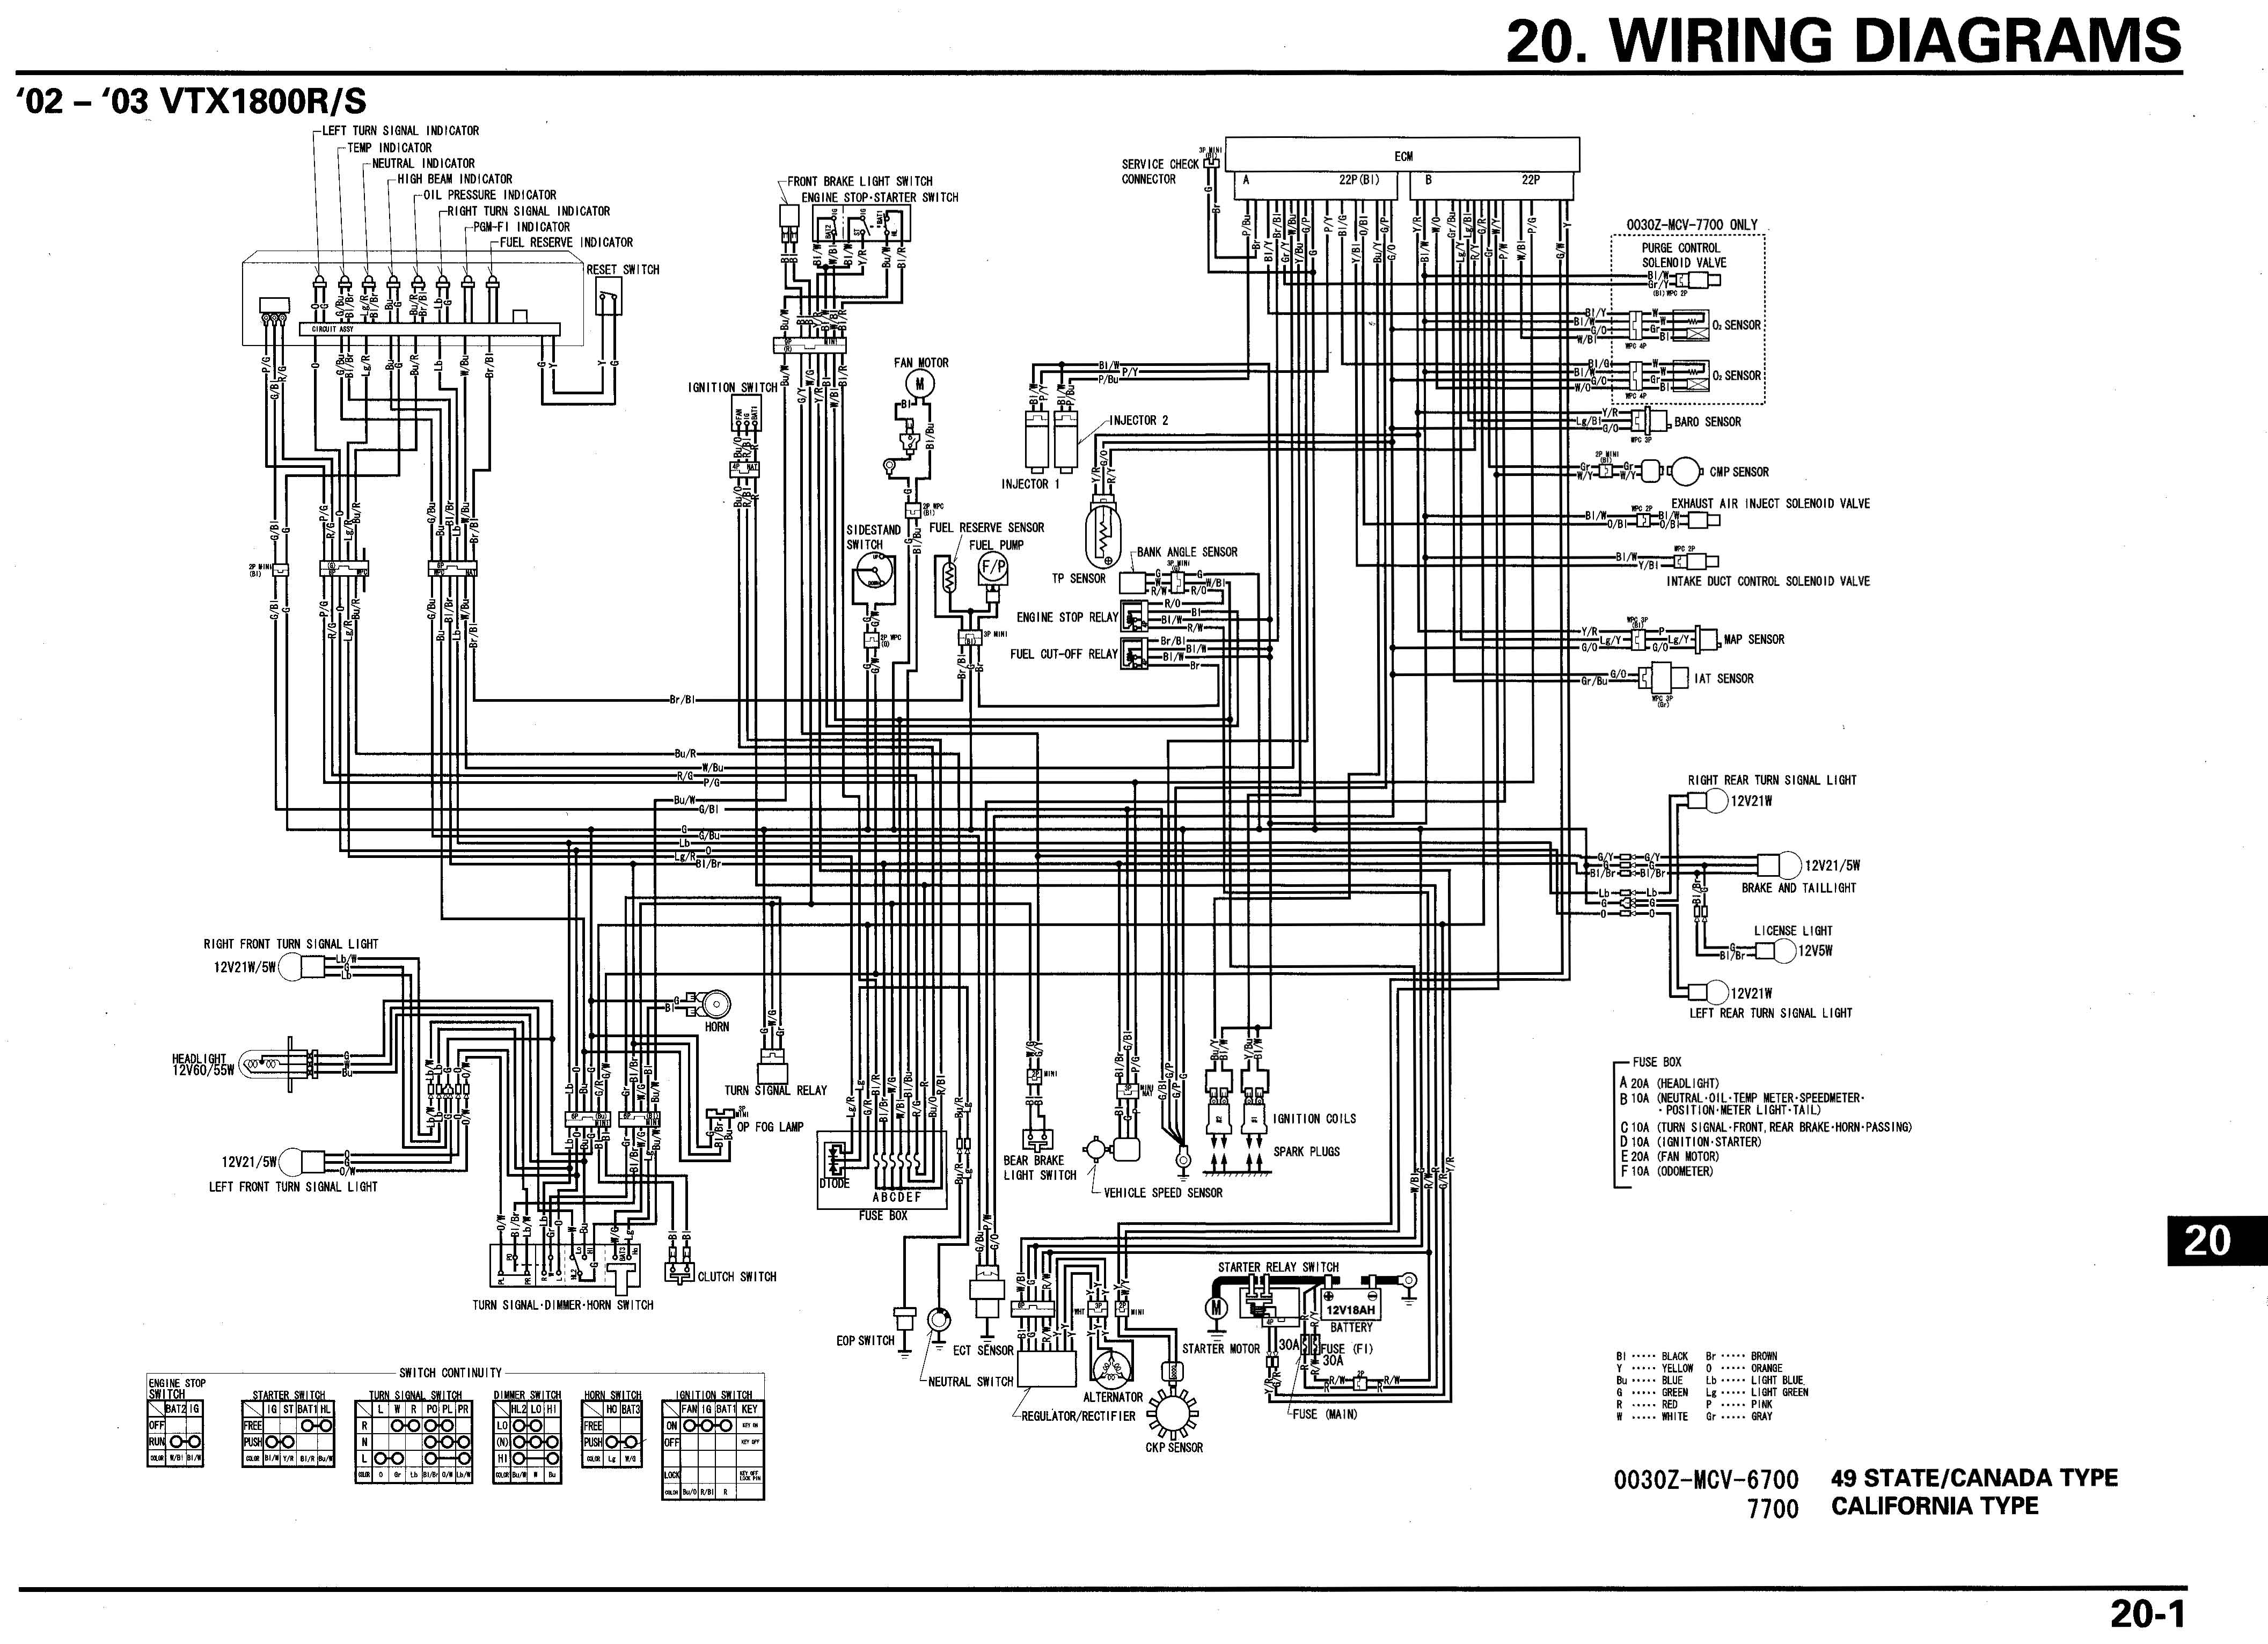 05 honda vtx 1300 headlight wiring diagram